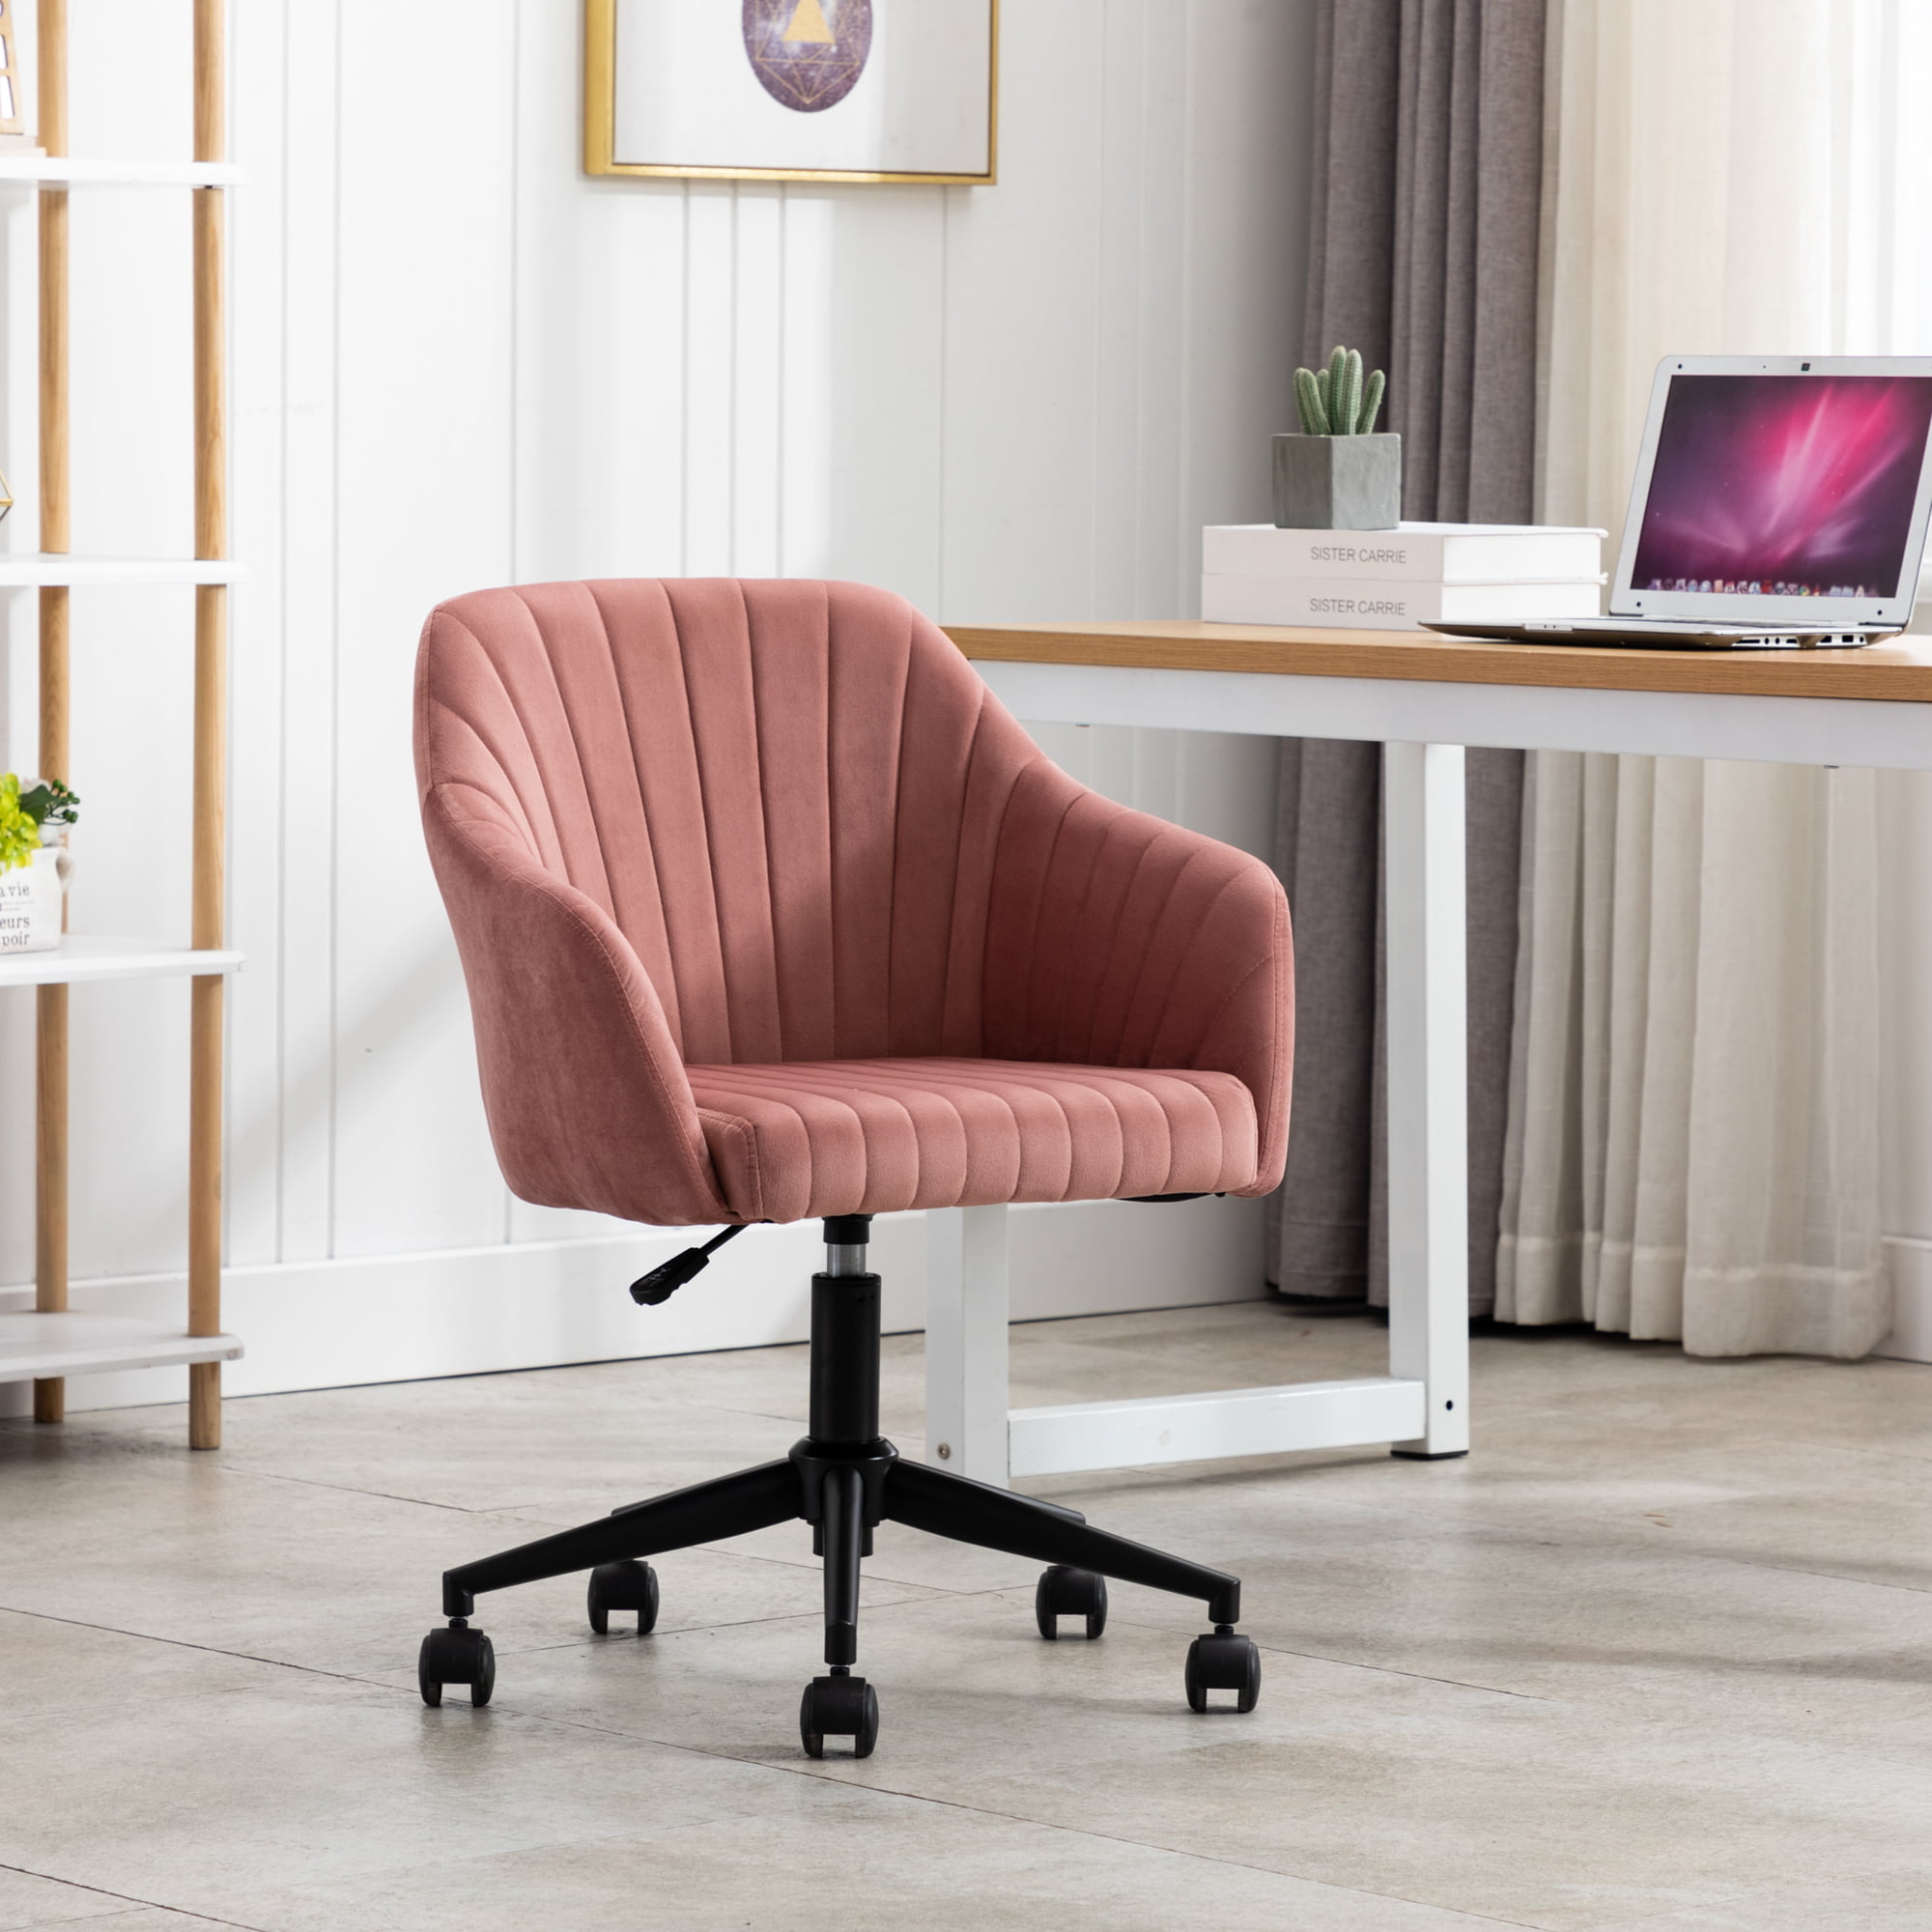 Executive Velvet Office Chair Home Swivel Computer Desk Chair Ergonomic Back 